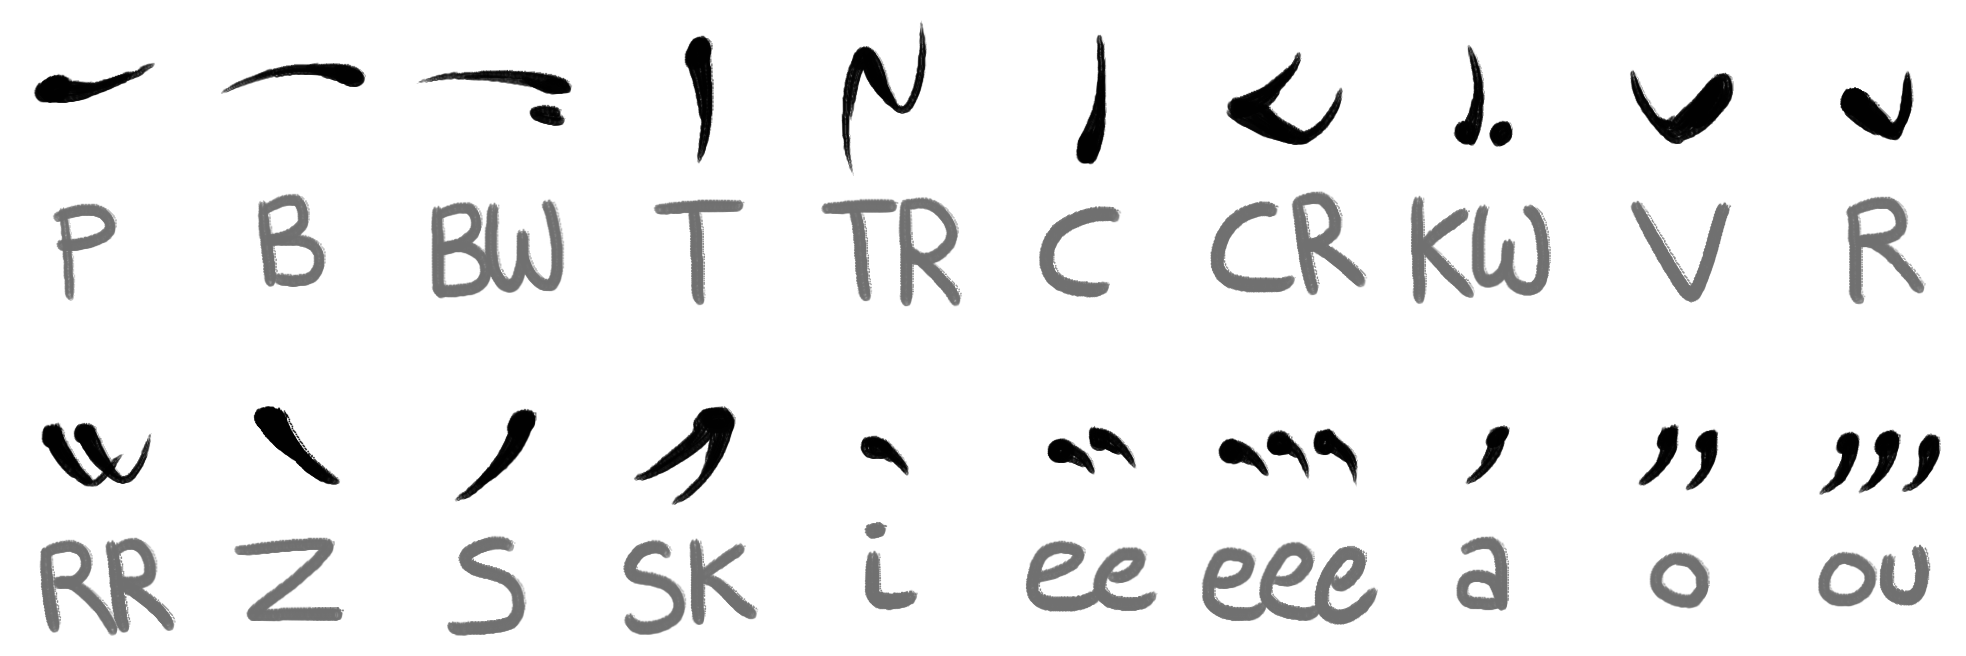 Grung alphabet